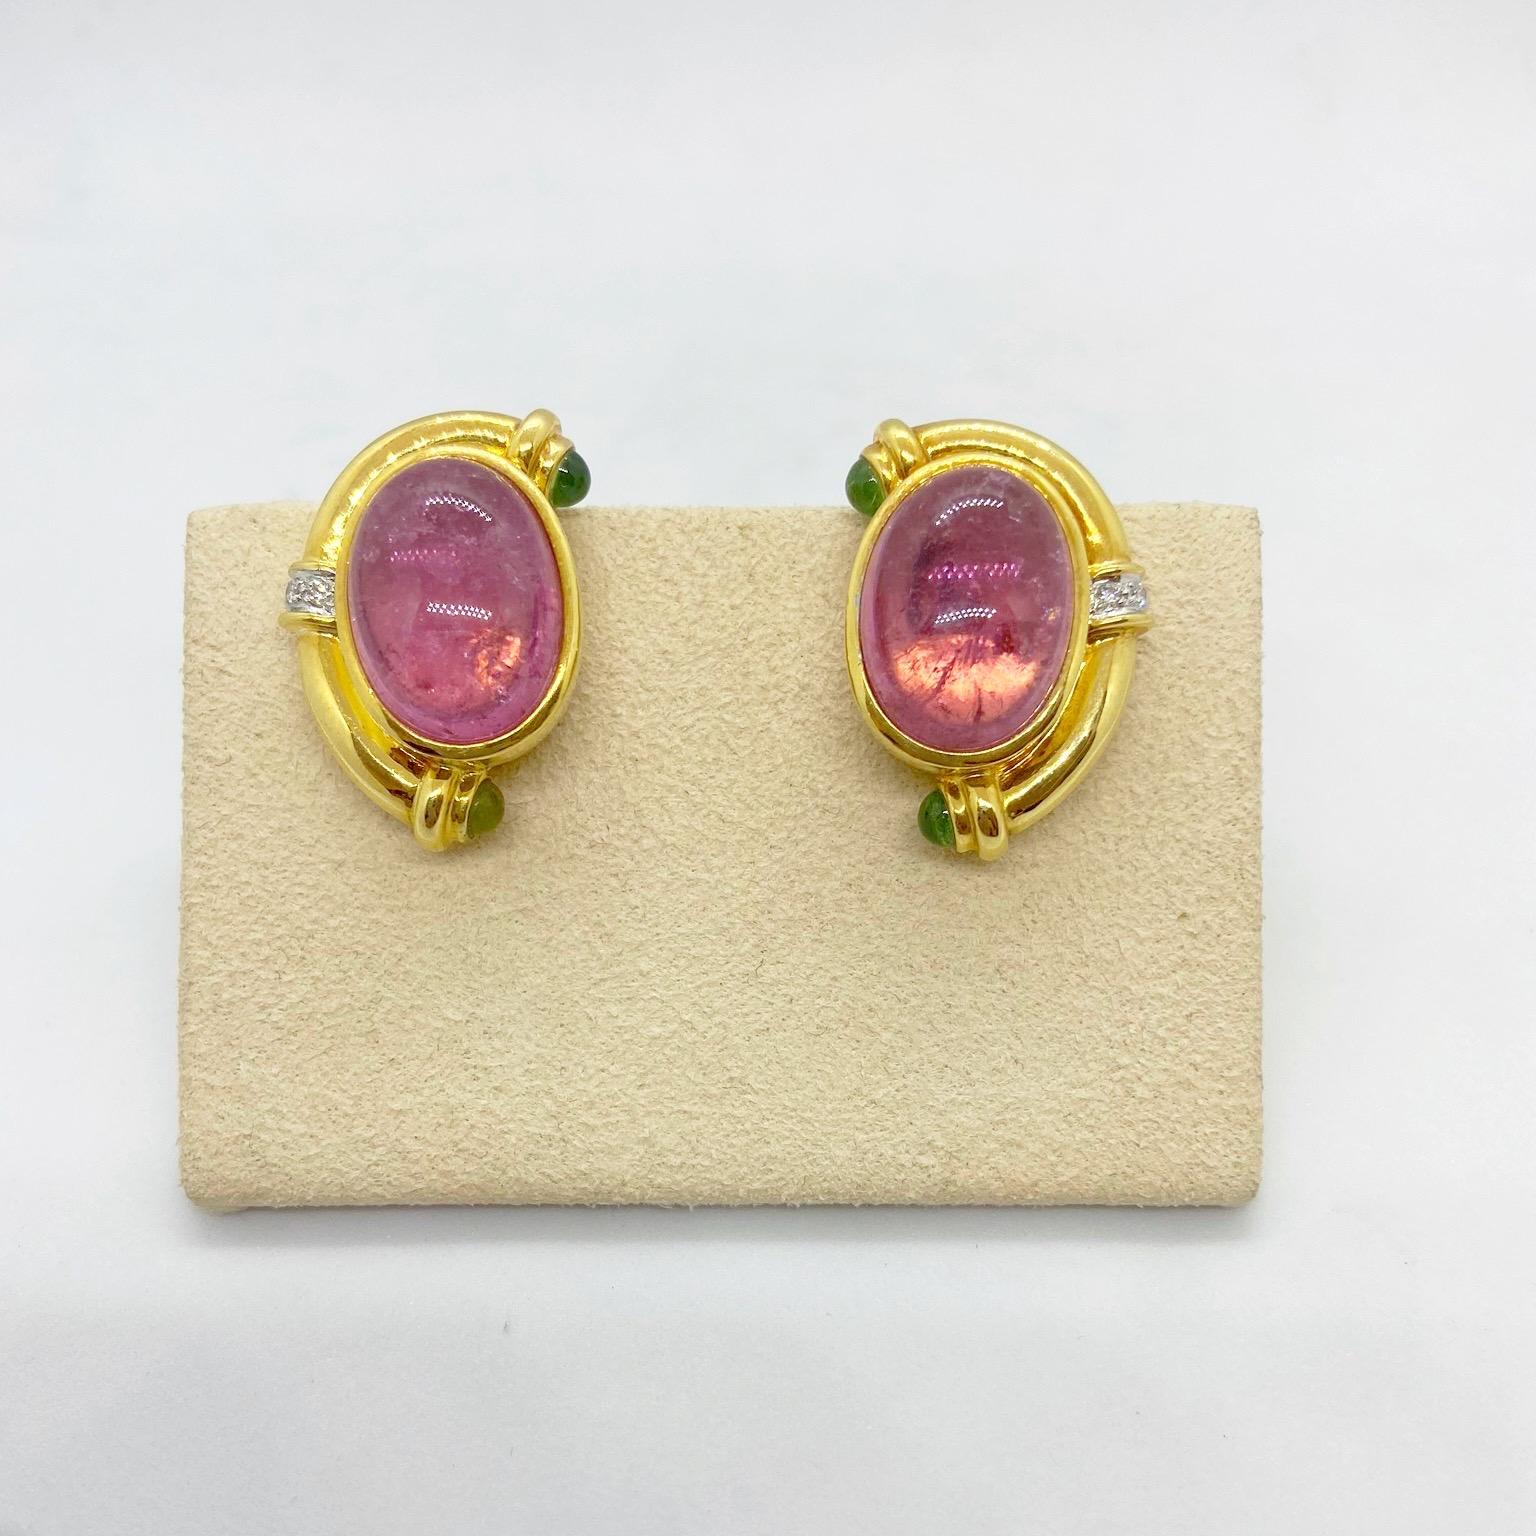 Diese Ohrringe bestehen aus großen ovalen rosa Turmalin-Cabochons in einer polierten Fassung aus 18 Karat Gelbgold. Die Ohrringe sind mit Diamanten und grünen Turmalin Cabochons akzentuiert und messen 1 1/8